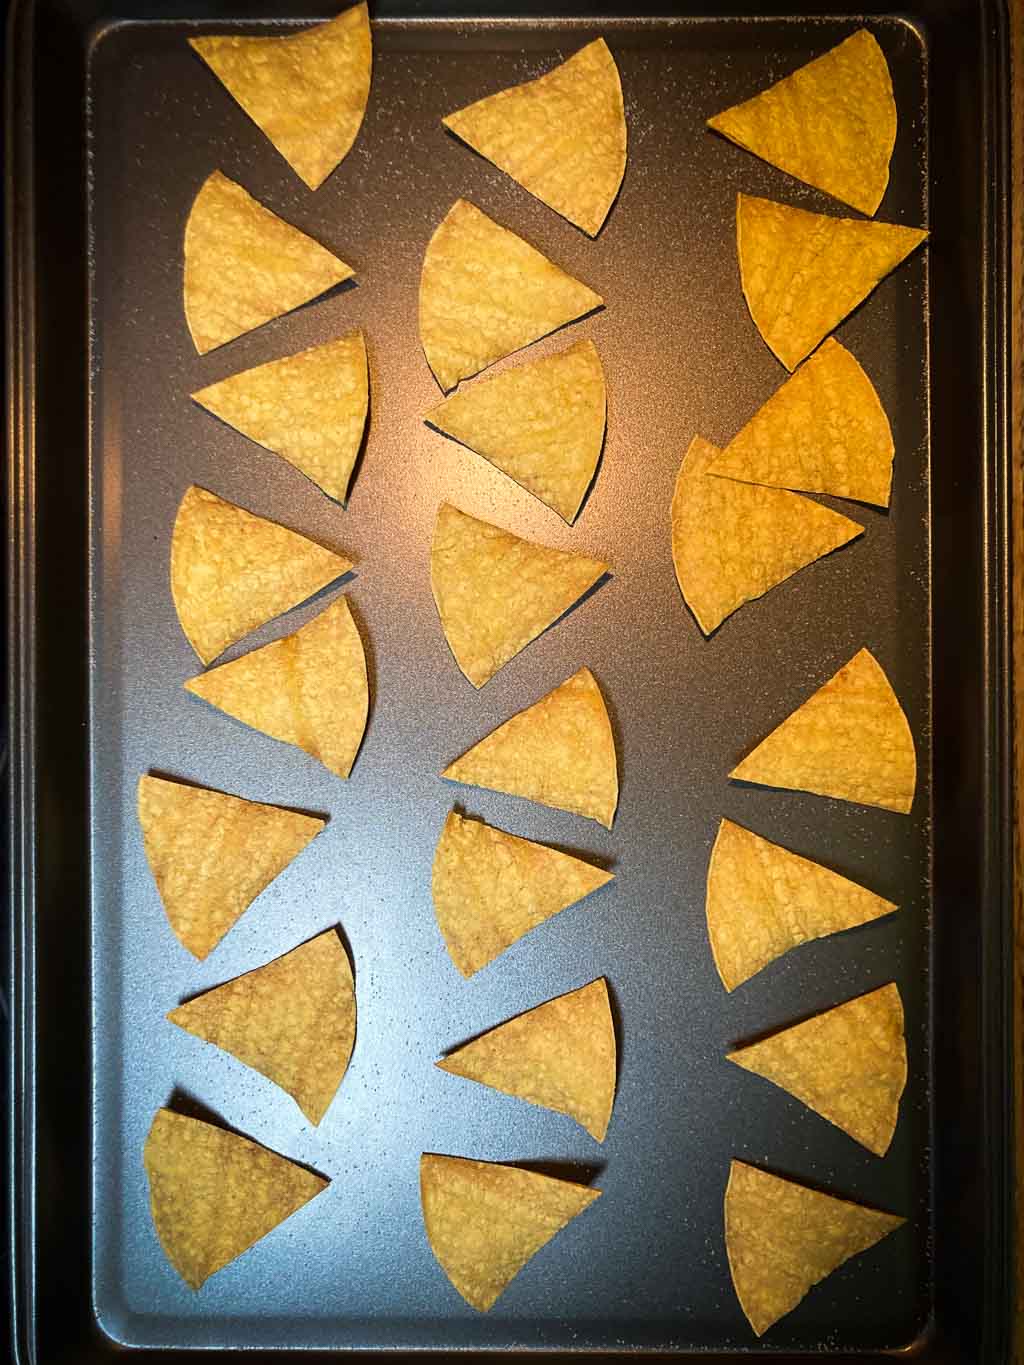 Baked tortillas chips